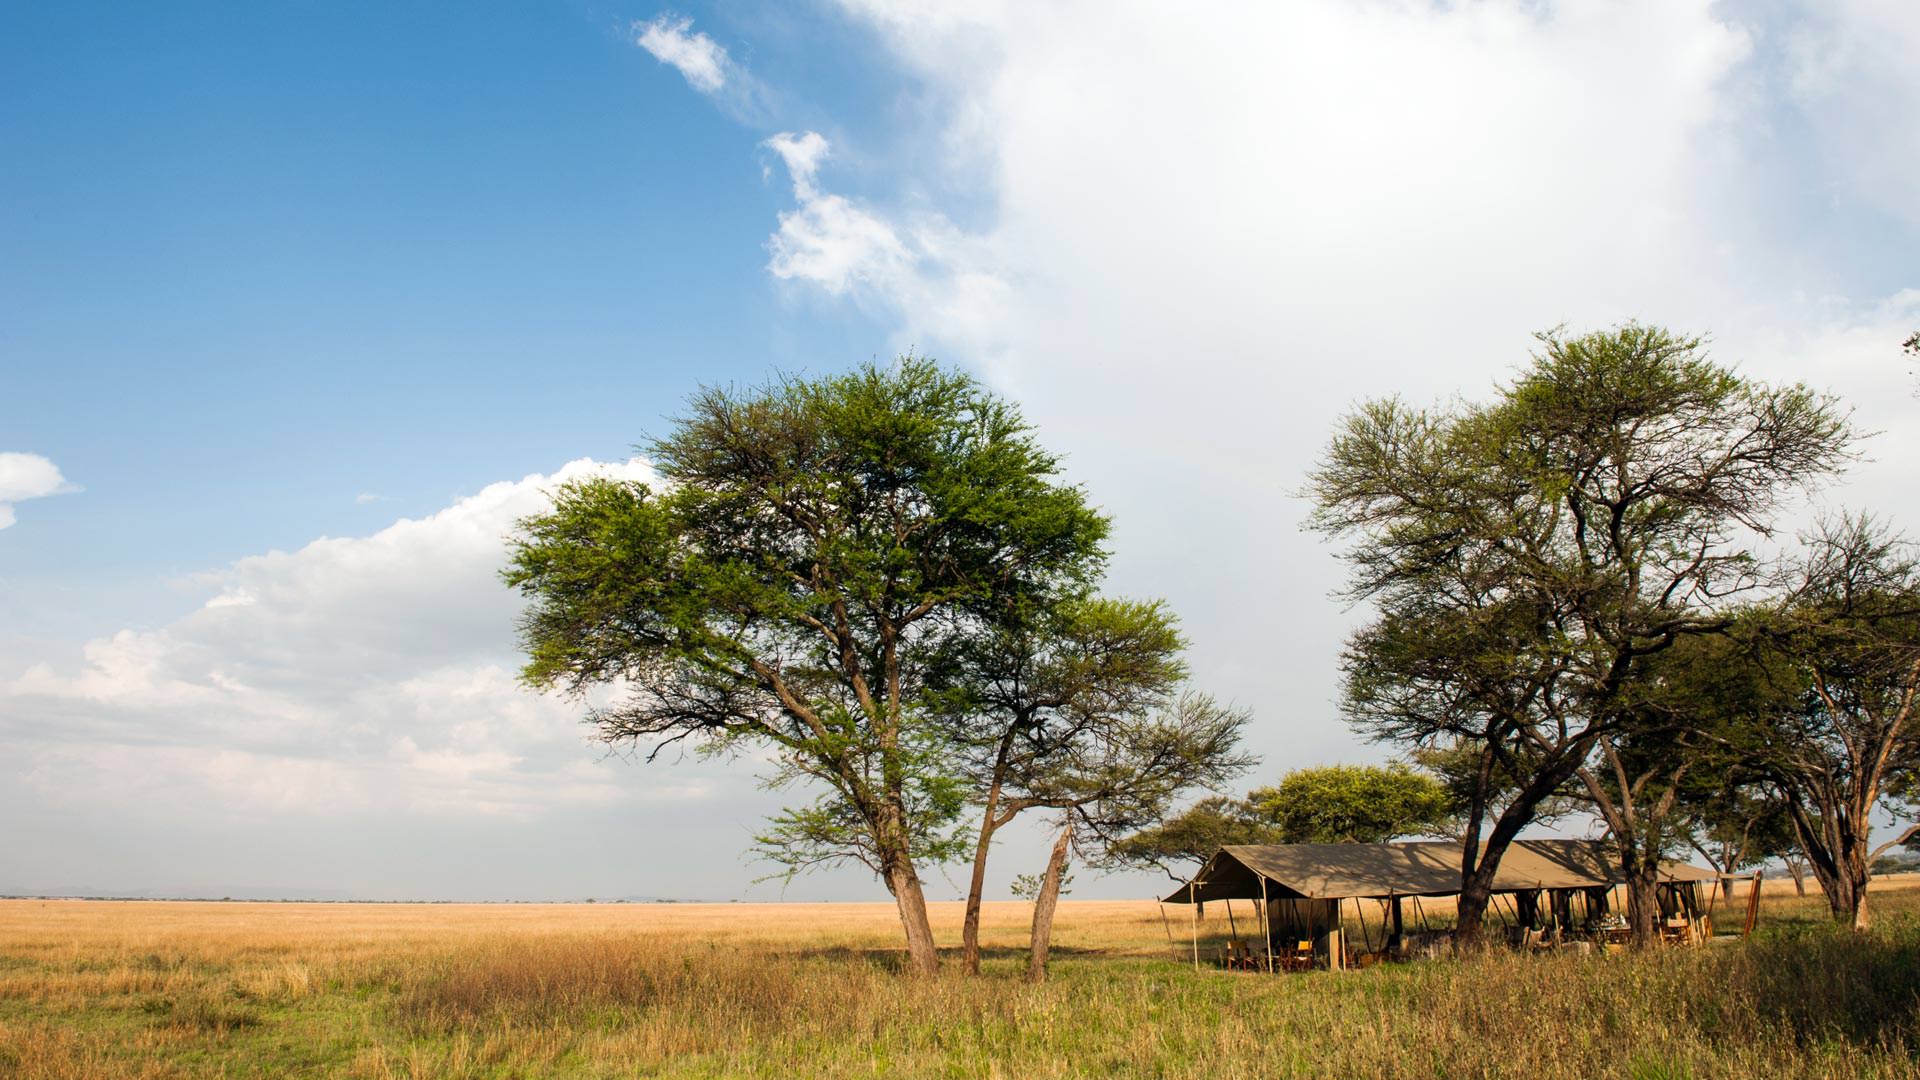 Serengeti Safari Camp Special Campsite